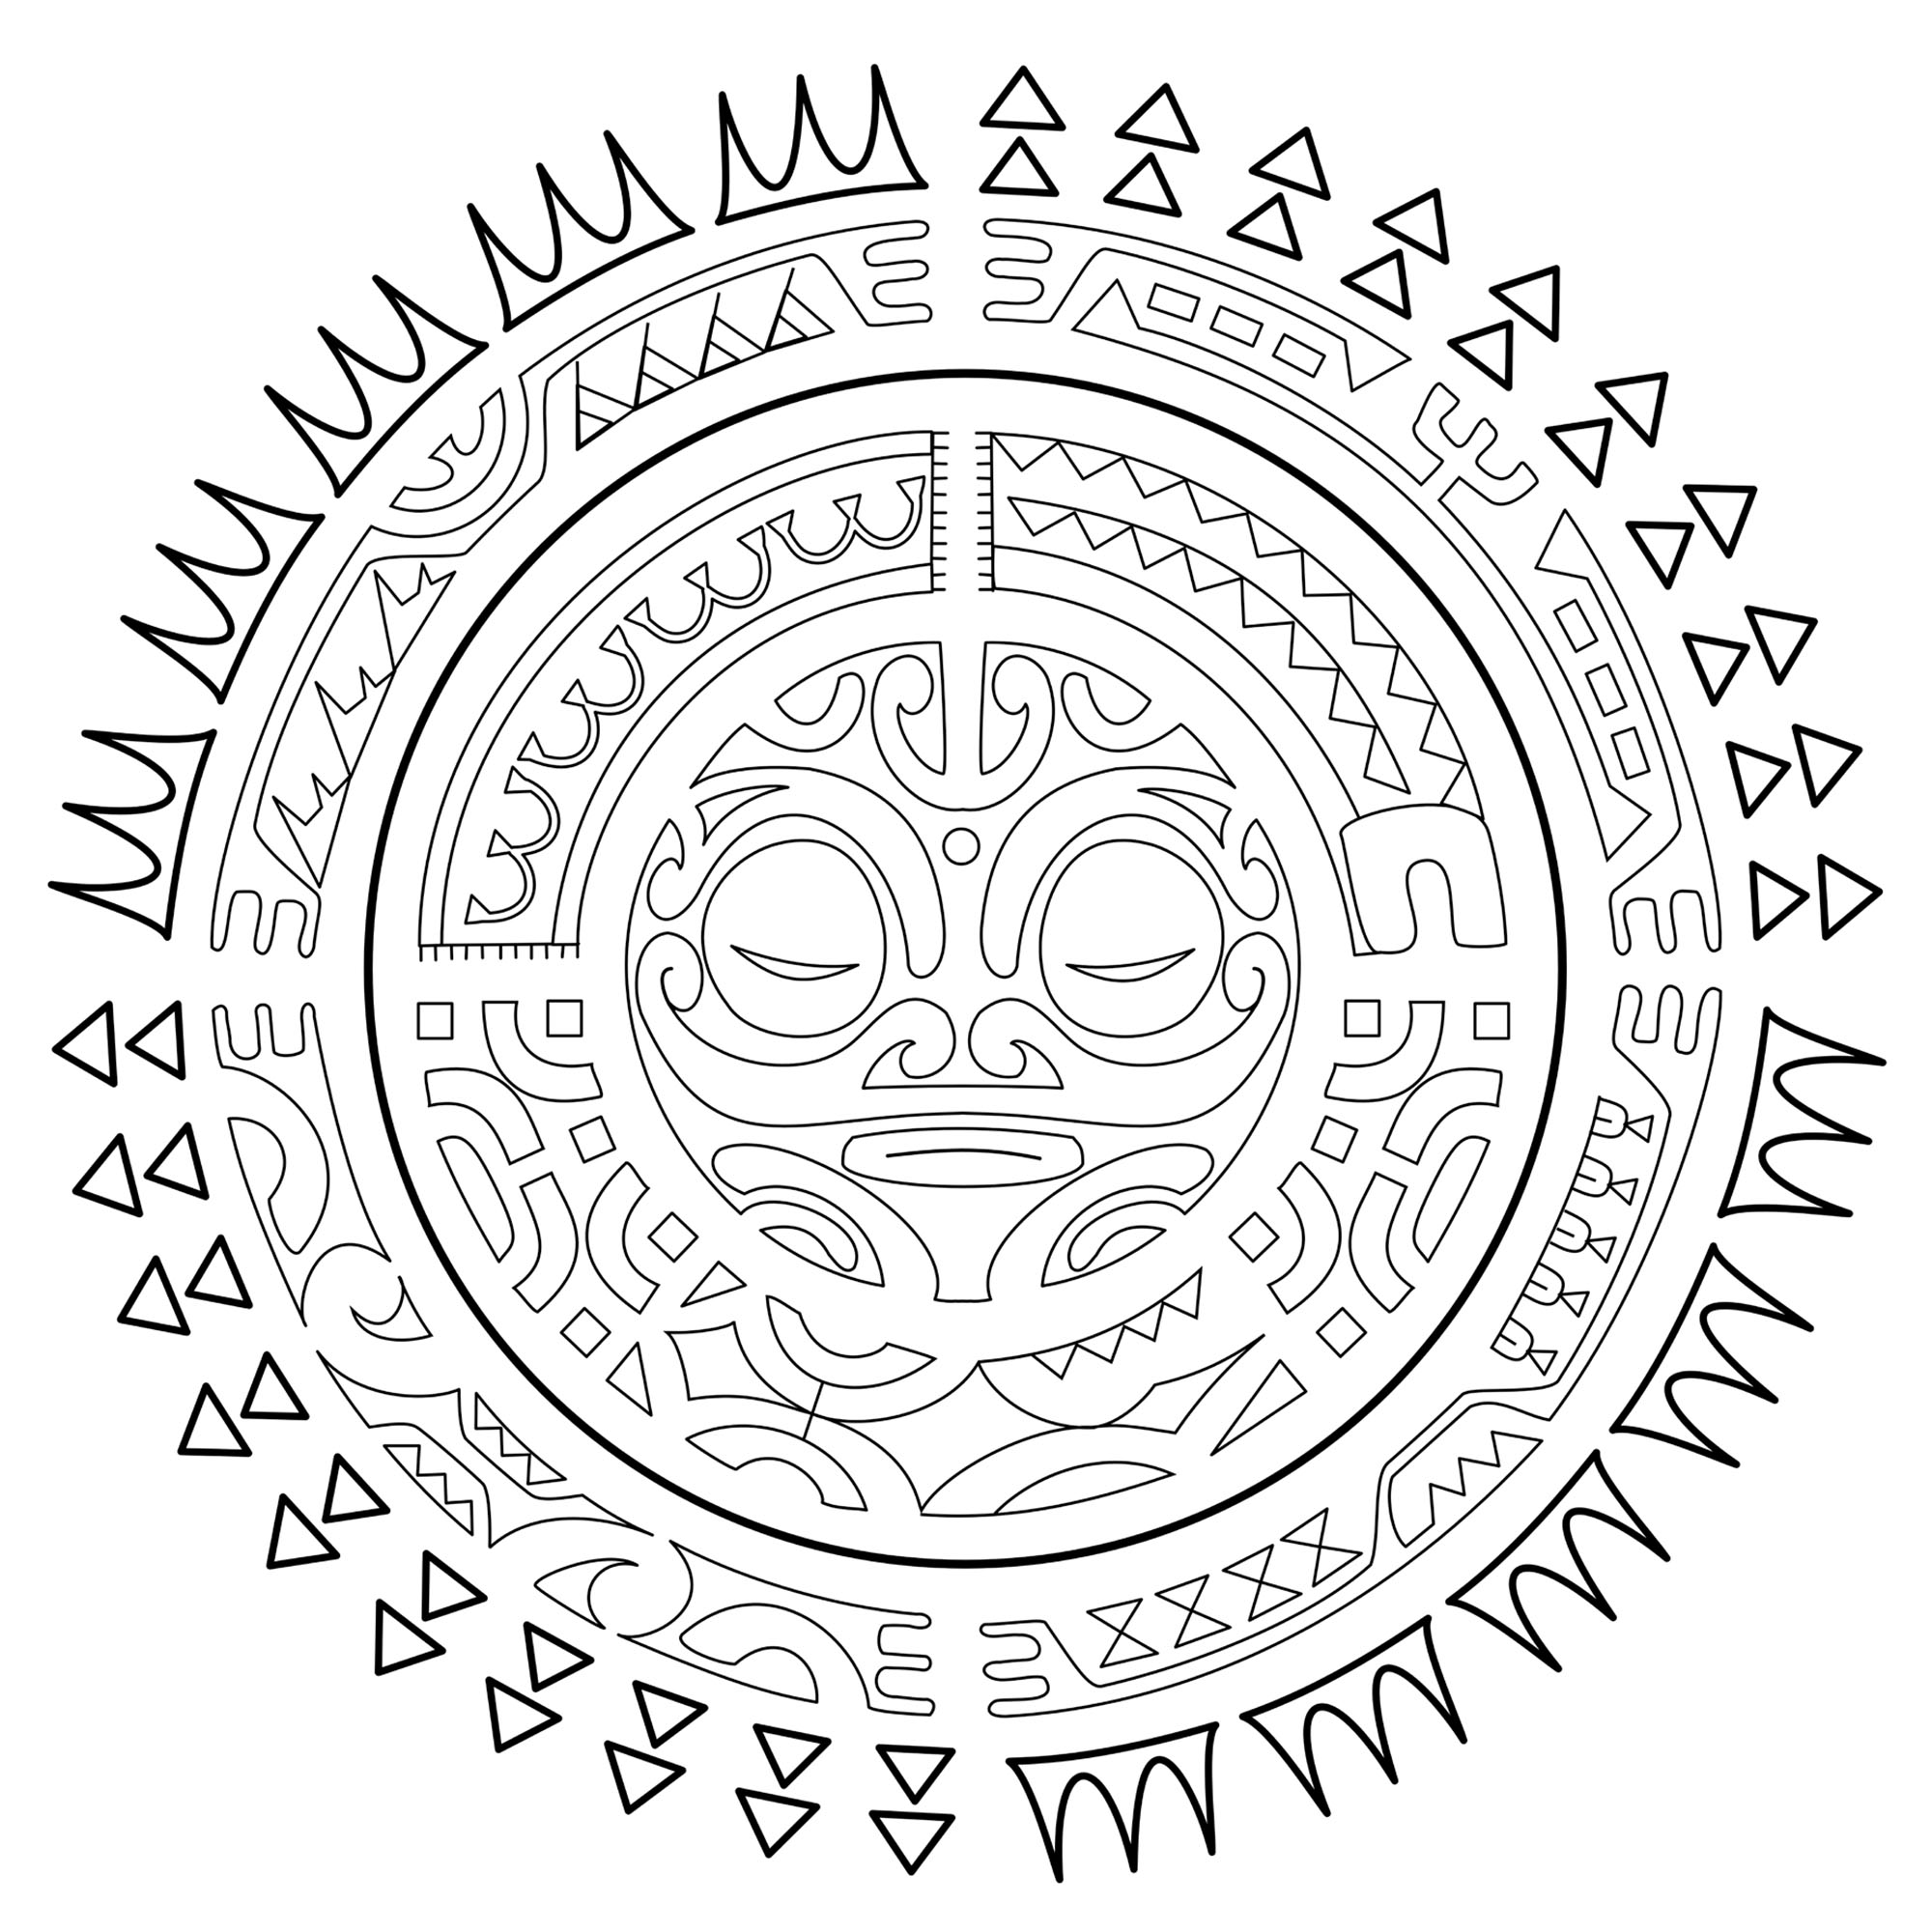 Tatuagem polinésia : O sol. Coloração do livro Polynesian Tattoos: 42 Modern Tribal Designs to Colour and Explore do artista italiano Roberto 'Gi. Erre' Gemori.Saiba mais aqui: www.shambhala.com/polynesian-tattoos.html Site do artista: Tattootribes.com, Artista : Roberto “Gi. Erre” Gemori